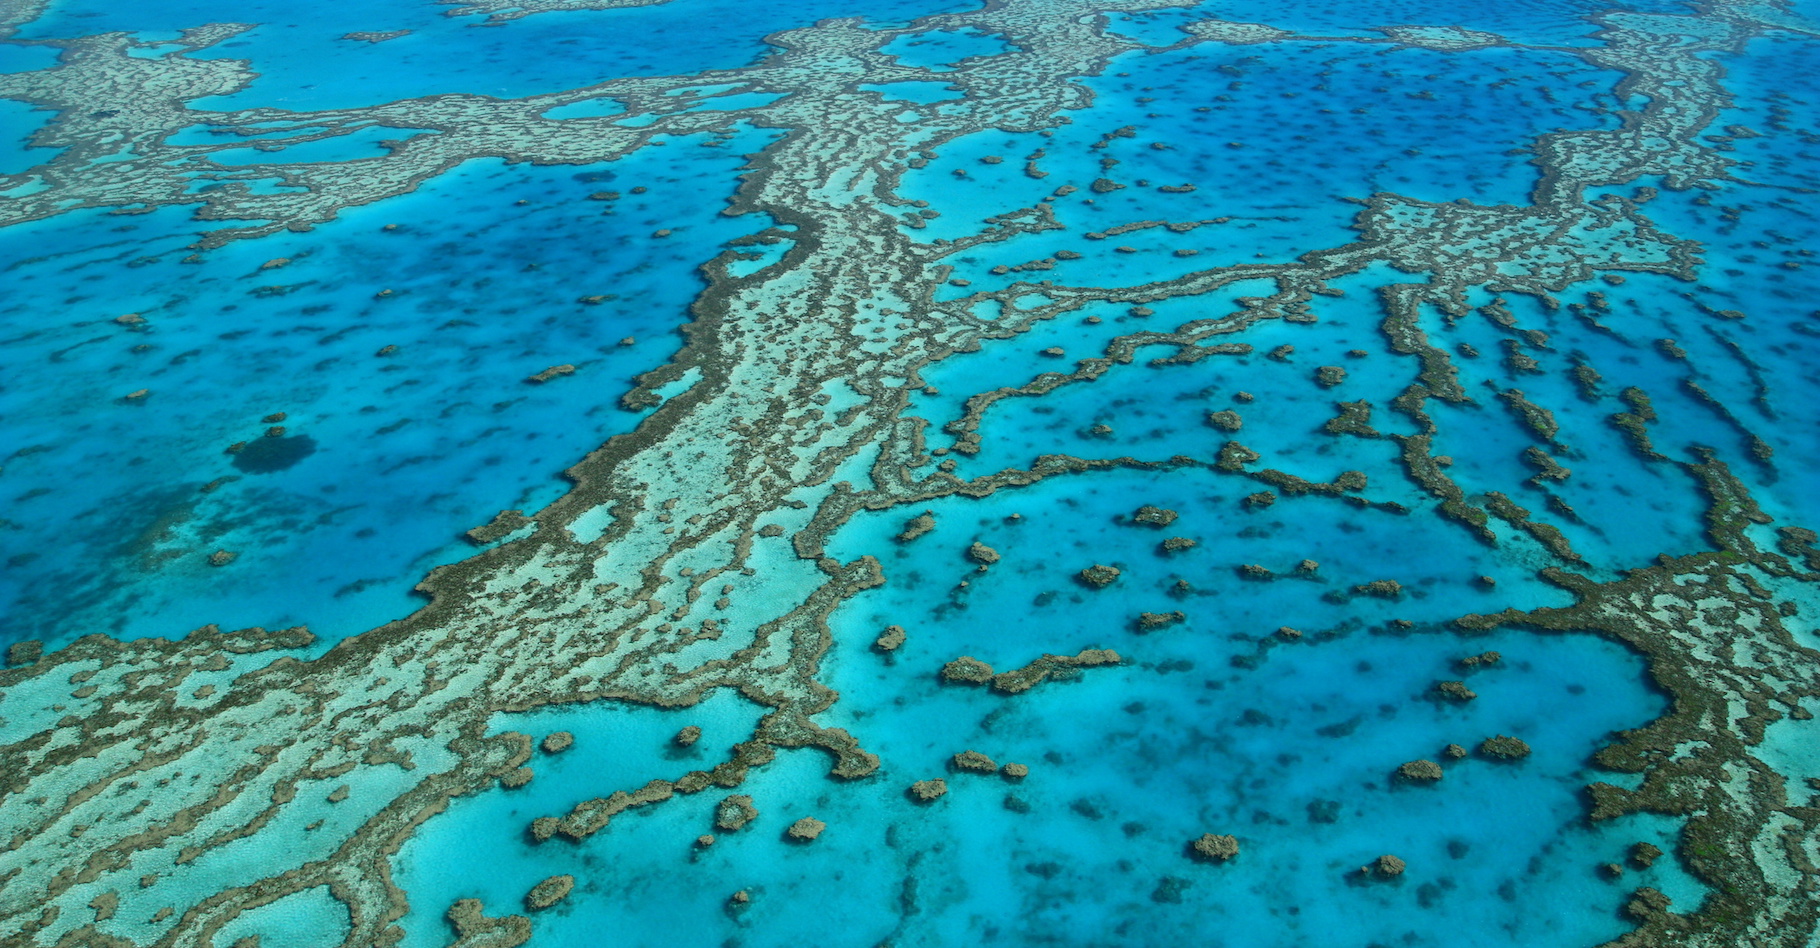 Des environnements marins entiers, comme la Grande barrière de corail, sont mis en péril par le réchauffement climatique d'origine humaine. © chibijet, Adobe Stock